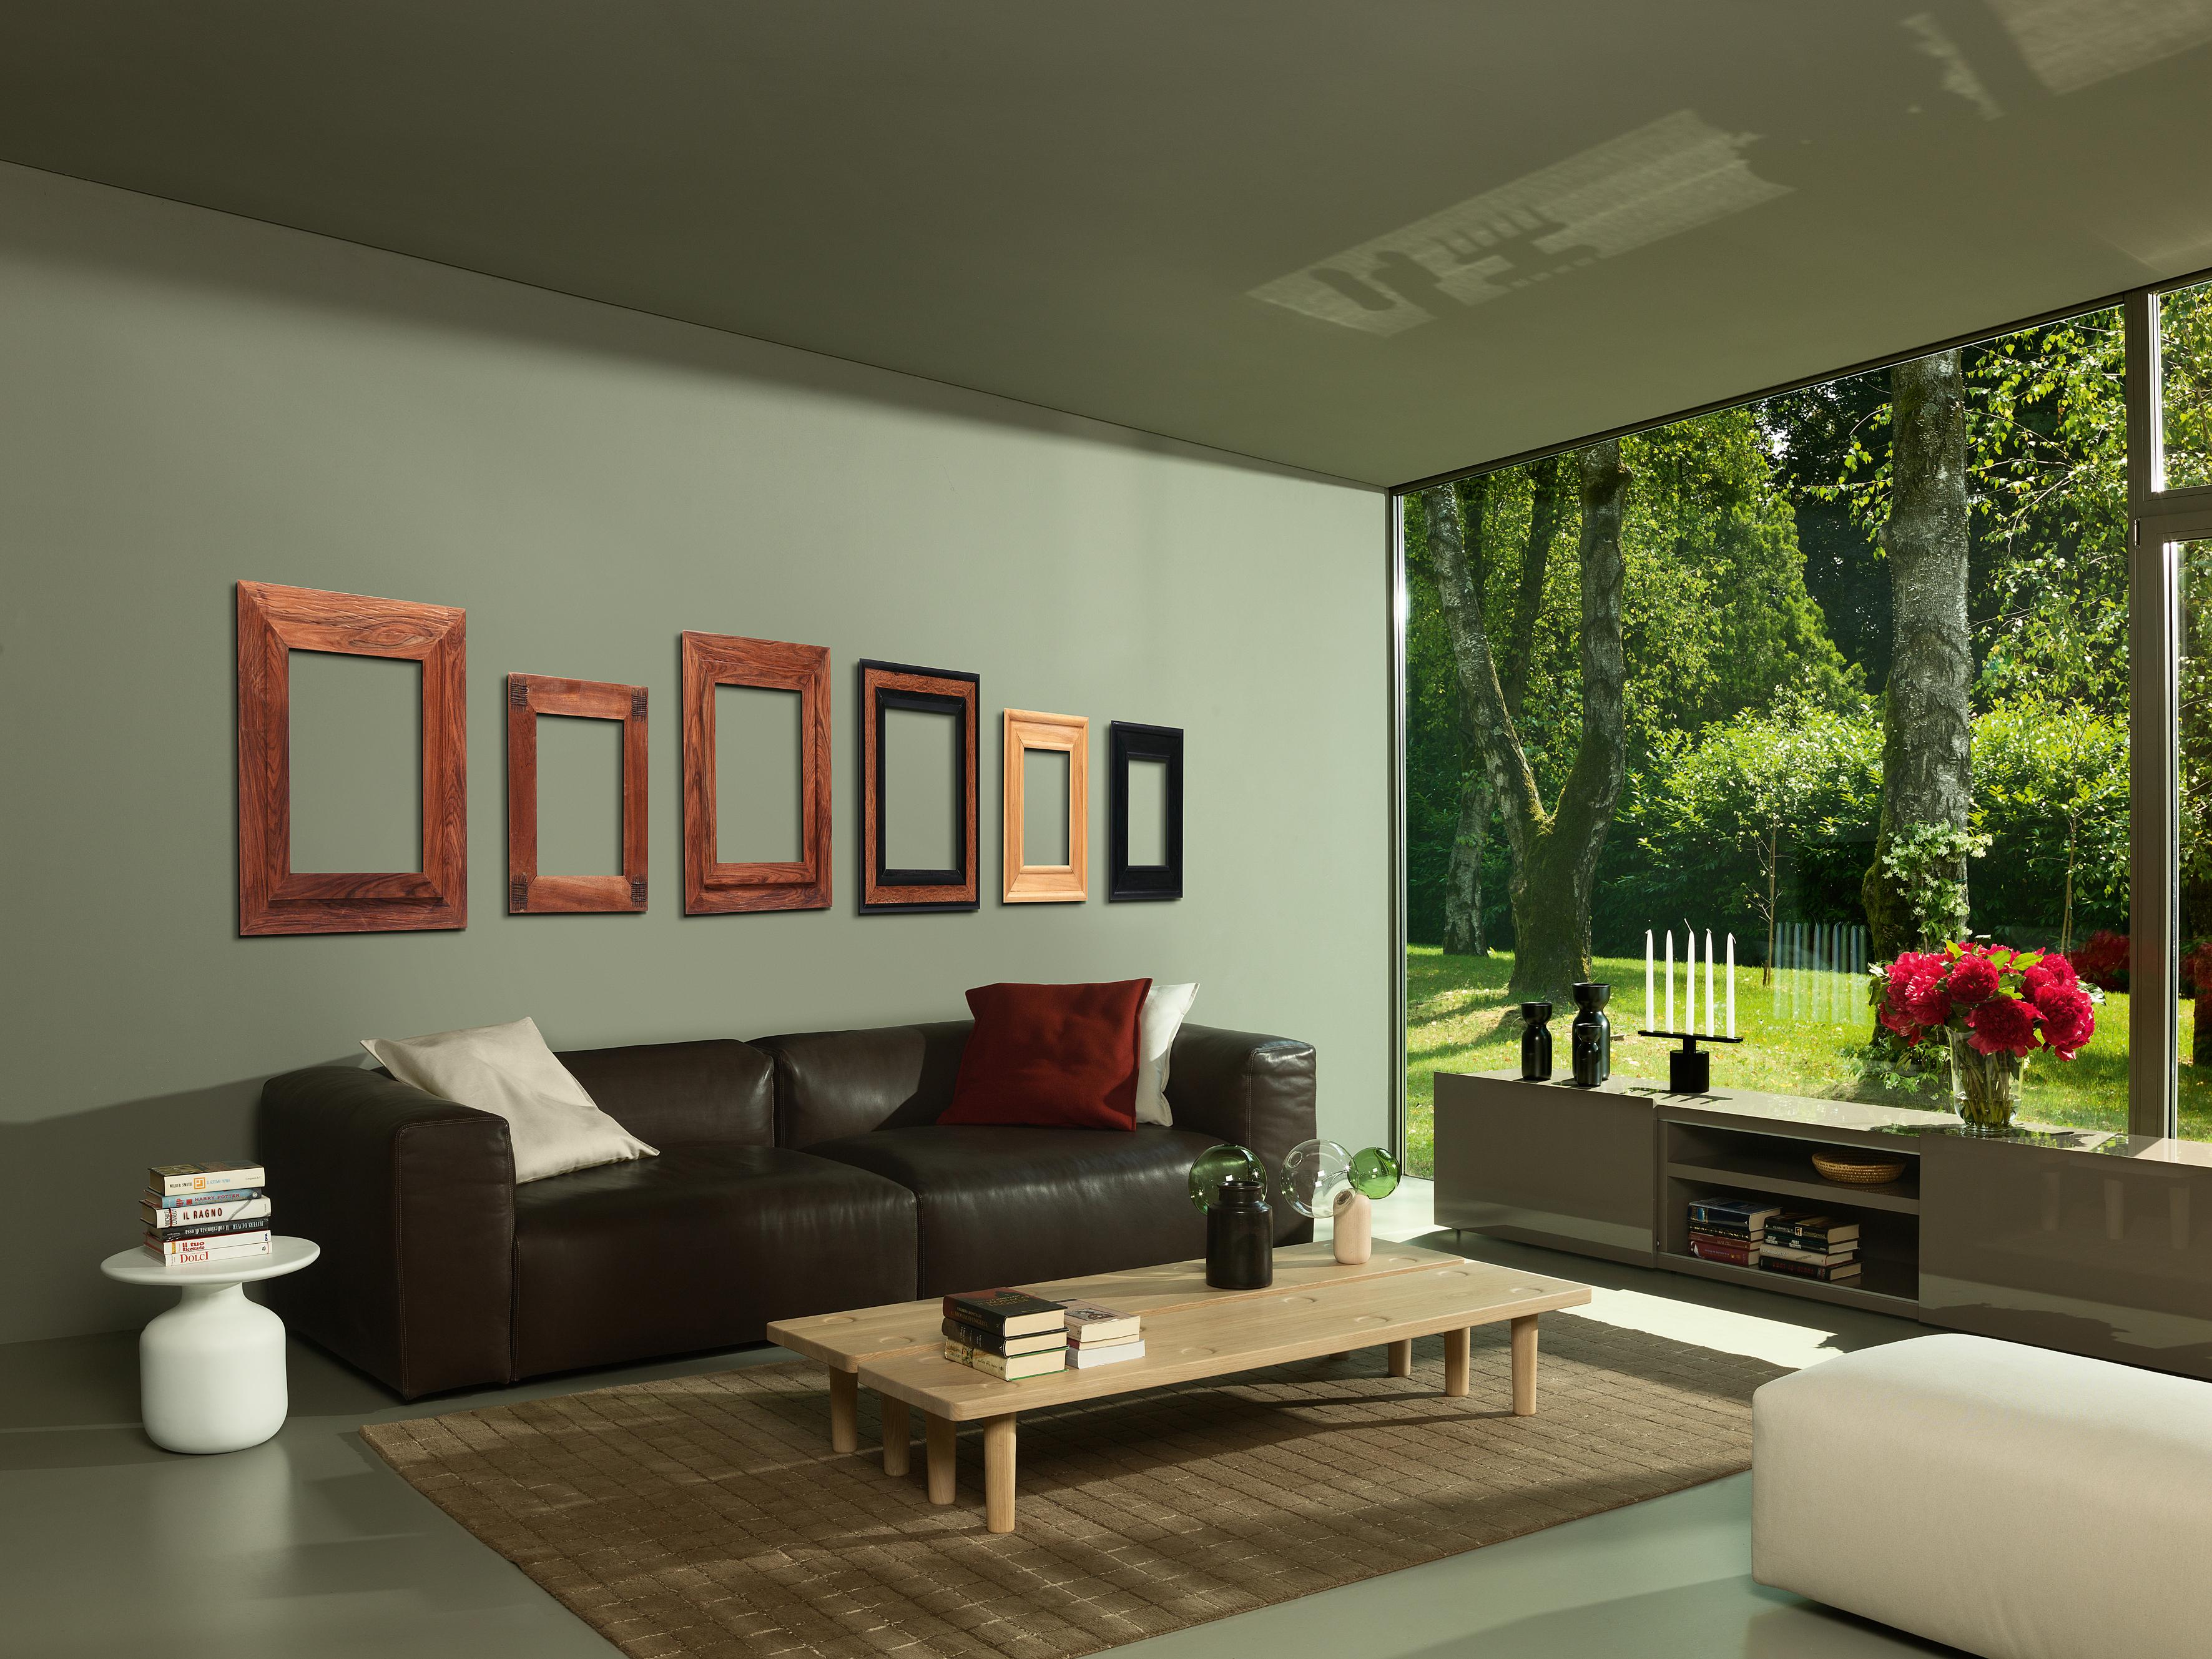 Die für den Wohn- und Objektbereich konzipierten Oblong System Sofas sind eine Serie von freistehenden und kompostierbaren Sitzmöbeln von Jasper Morrison, die die Möglichkeit bieten, individuelle zweiseitige Formationen zu schaffen. Das längliche